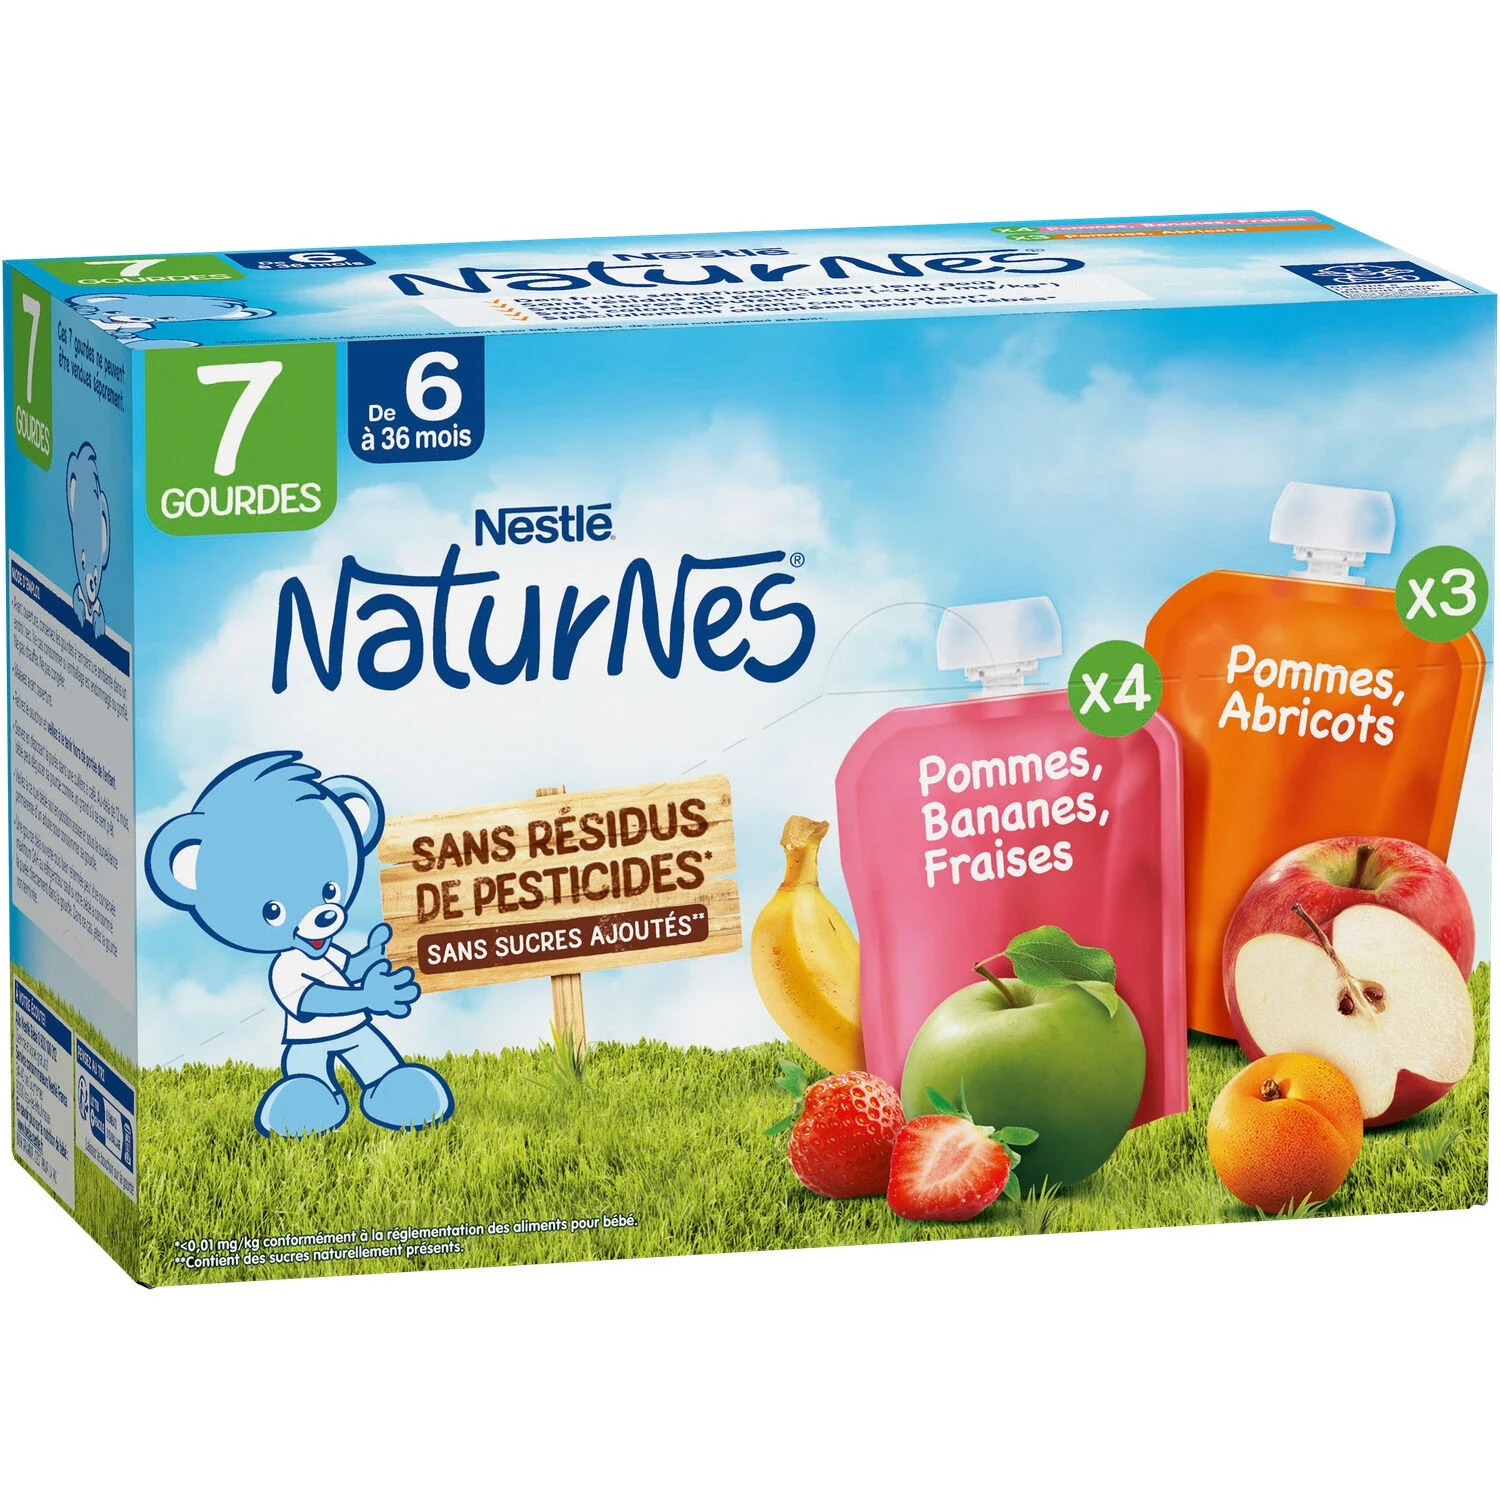 Naturnes gourdes multifruits pommes, bananes, fraises et pommes, abricots 7x90g - NESTLE